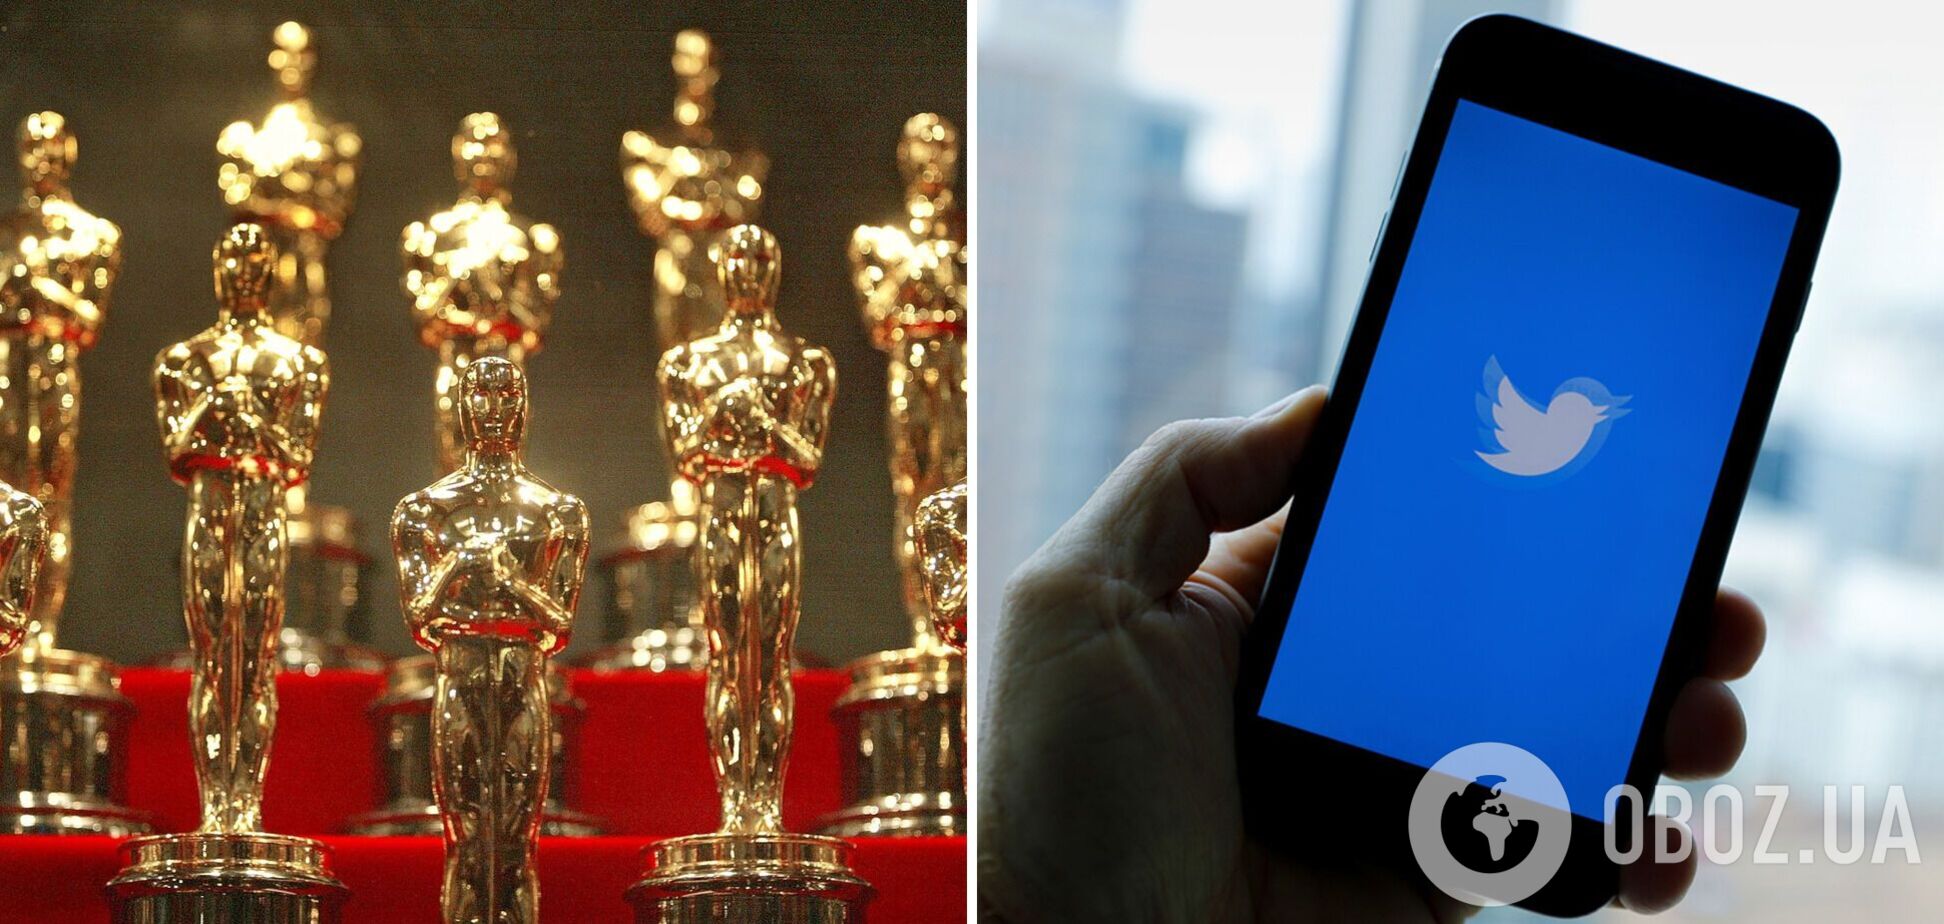 'Оскар' проведе спеціальне голосування через Twitter